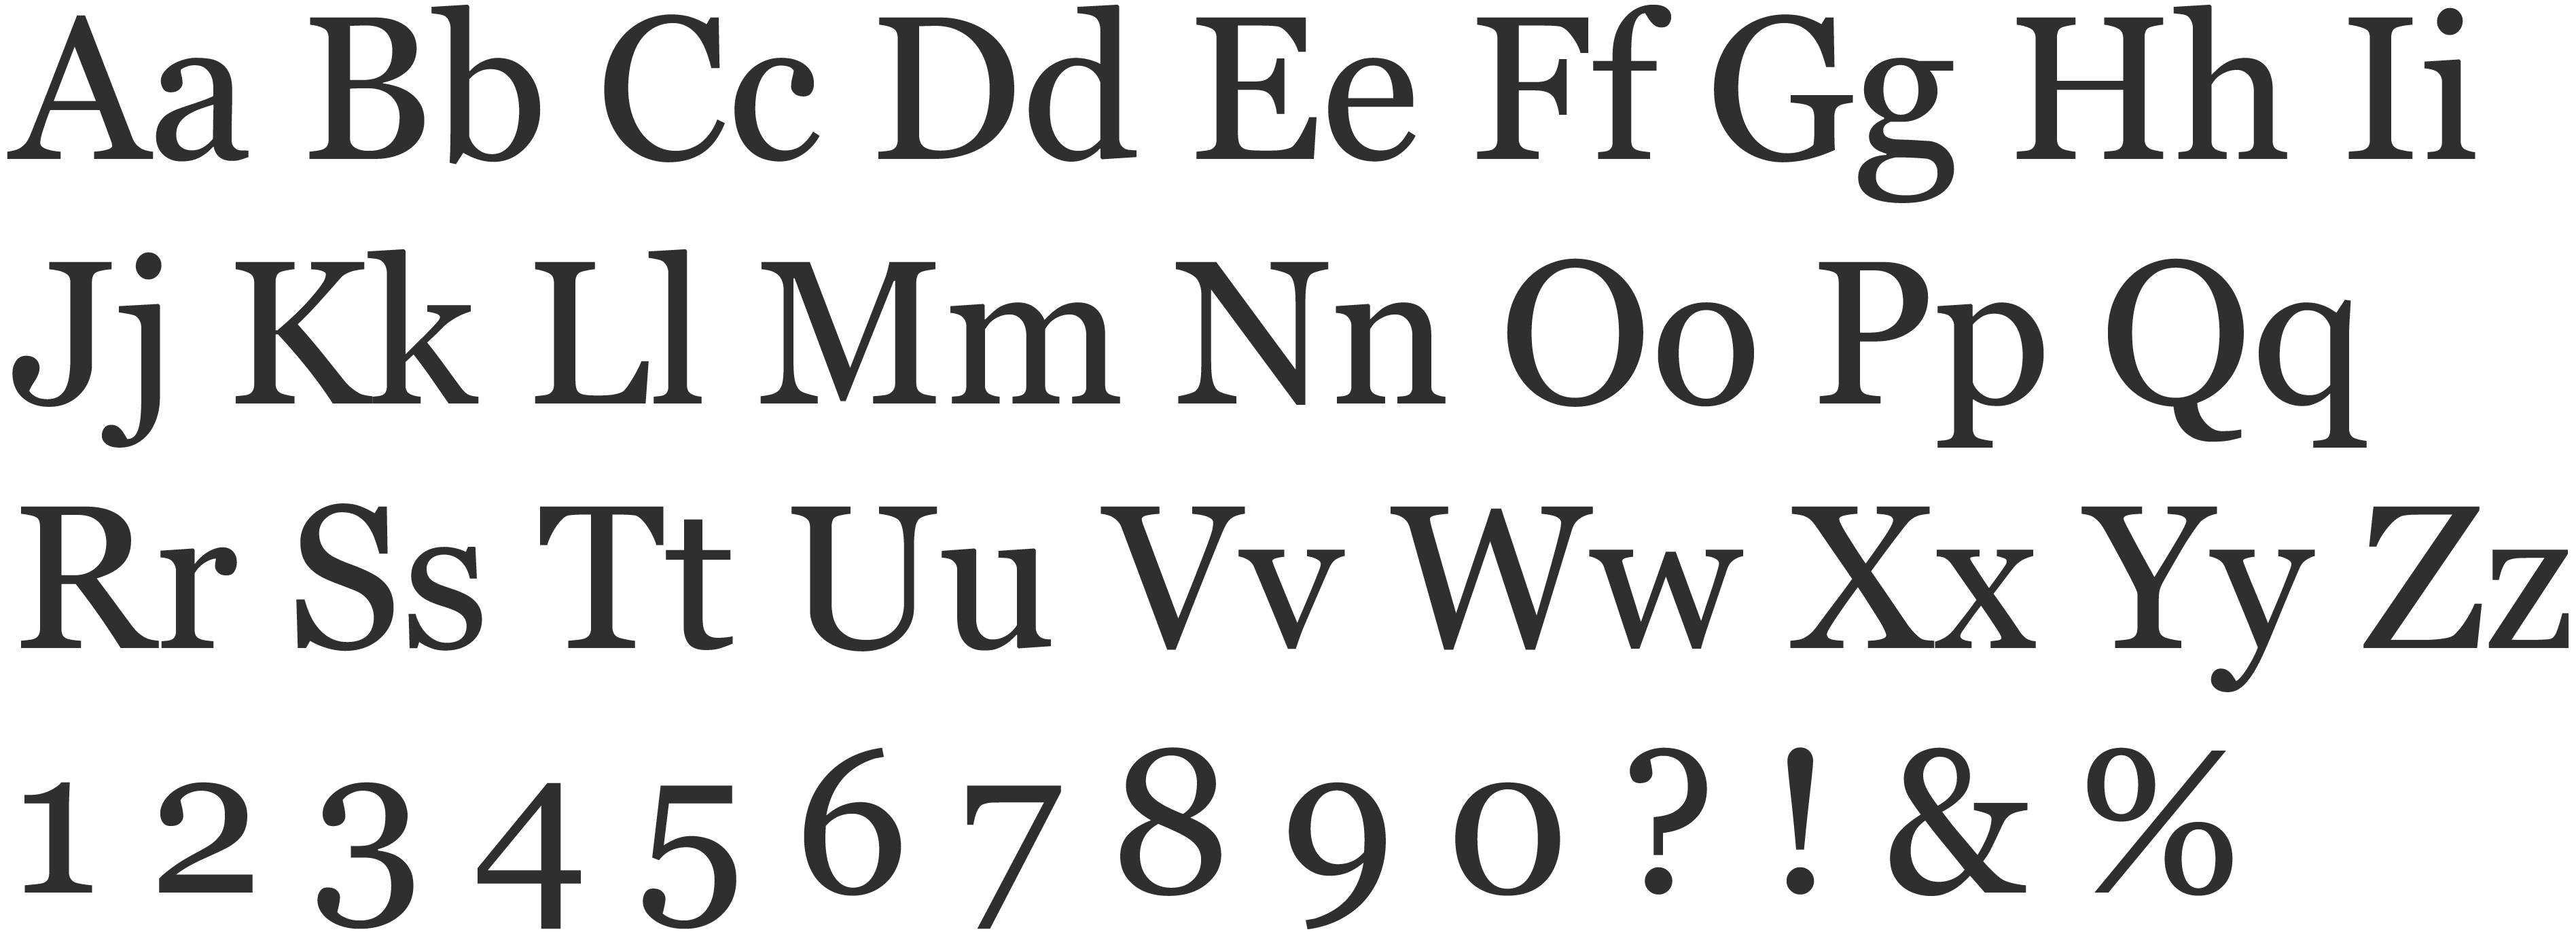 Georgia basic letterforms.